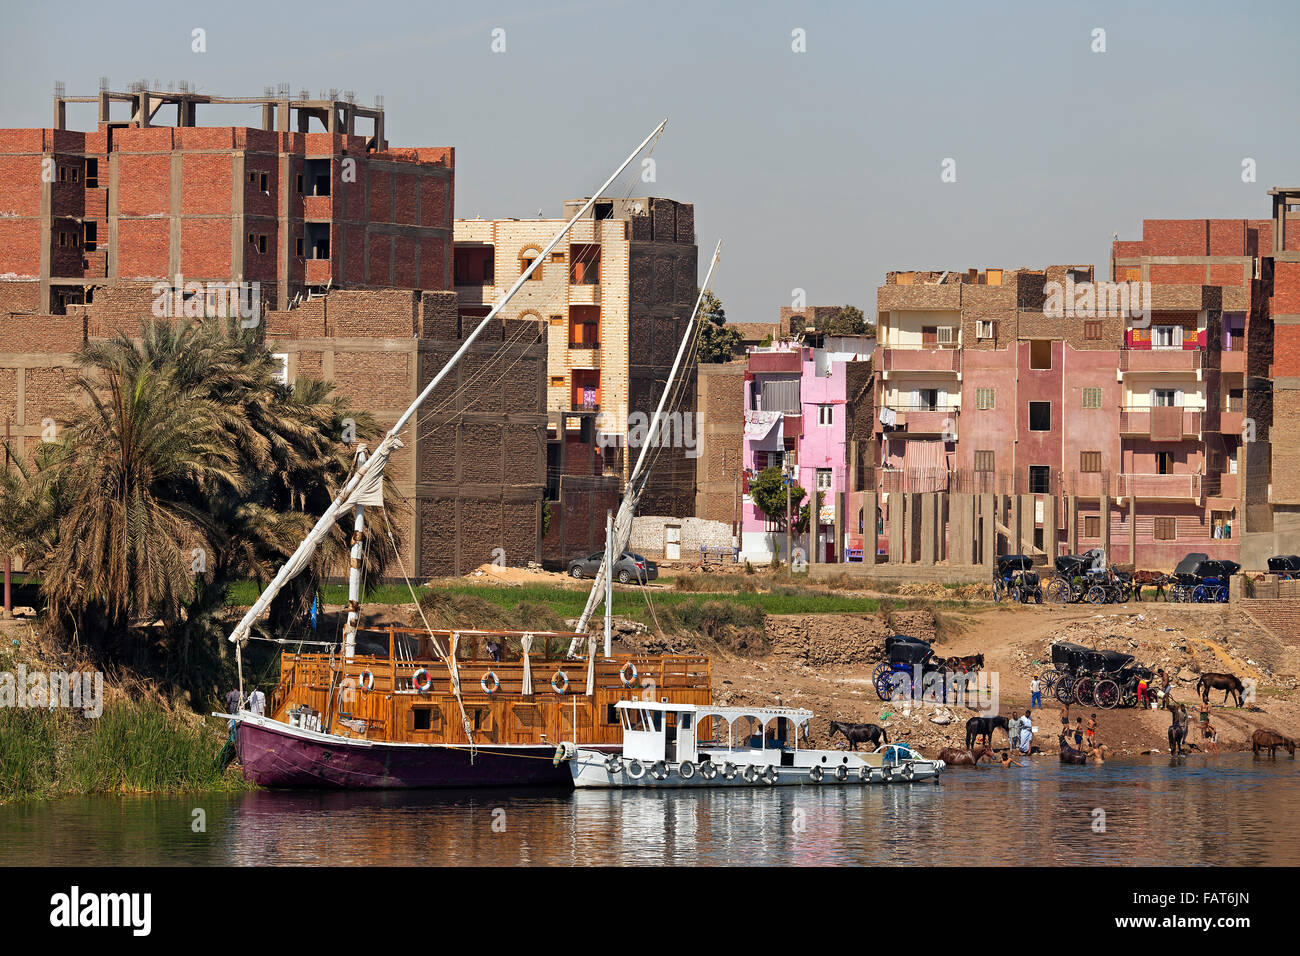 Dahabeya / Dahabiya cruise boat and the city Edfu / Idfu / Edfou on the west bank of the Nile River, Egypt Stock Photo